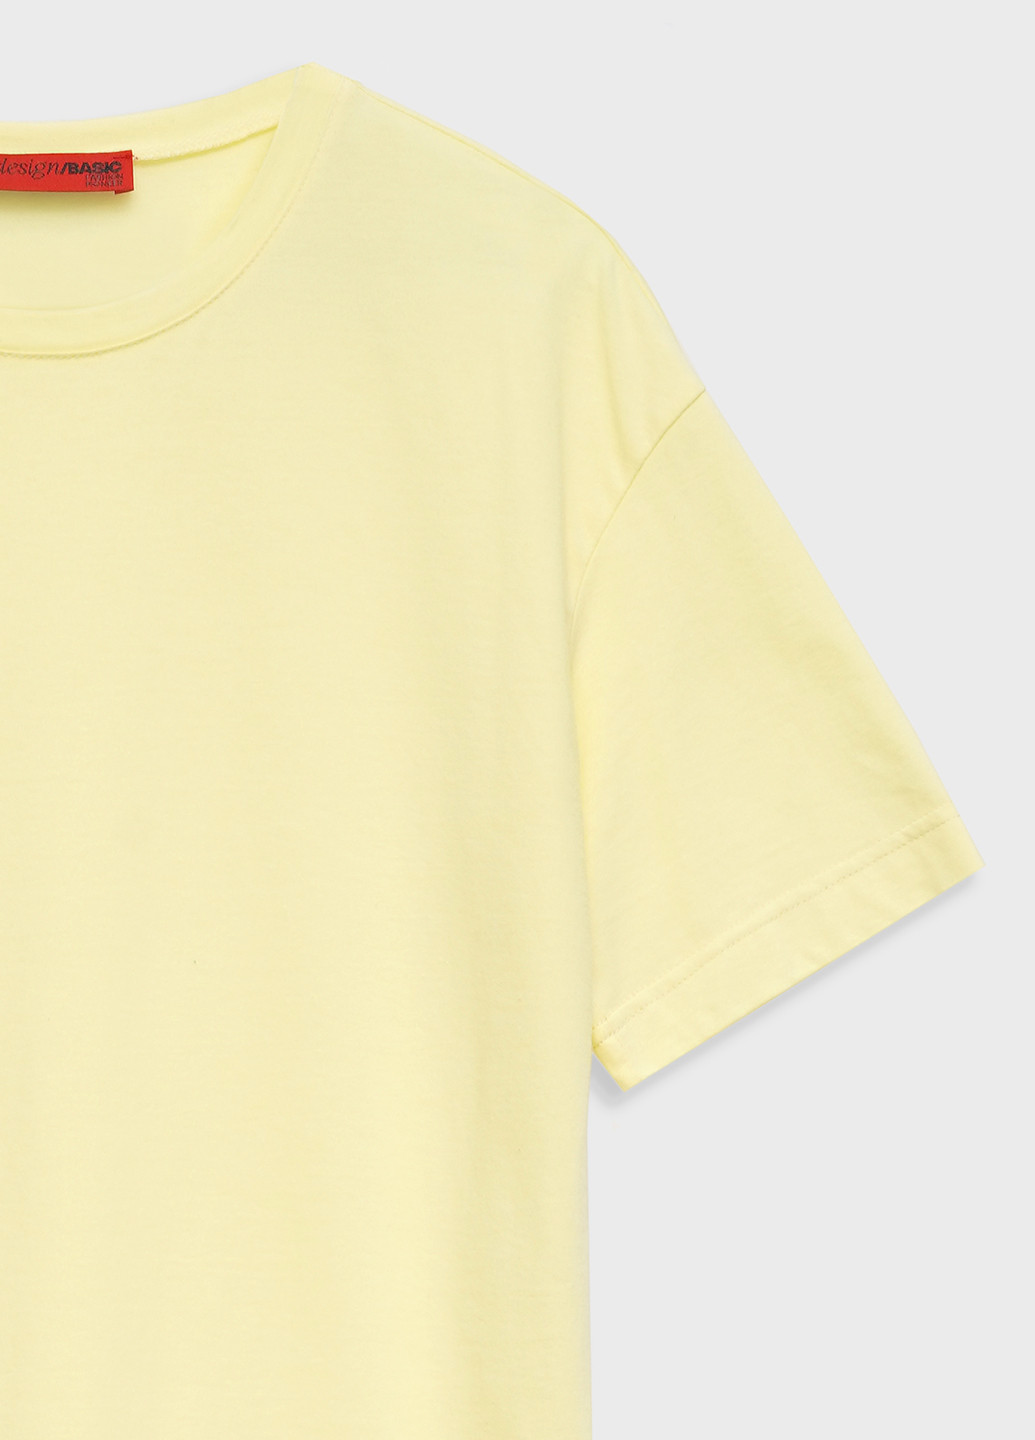 Светло-желтая летняя футболка женская оверсайз KASTA design